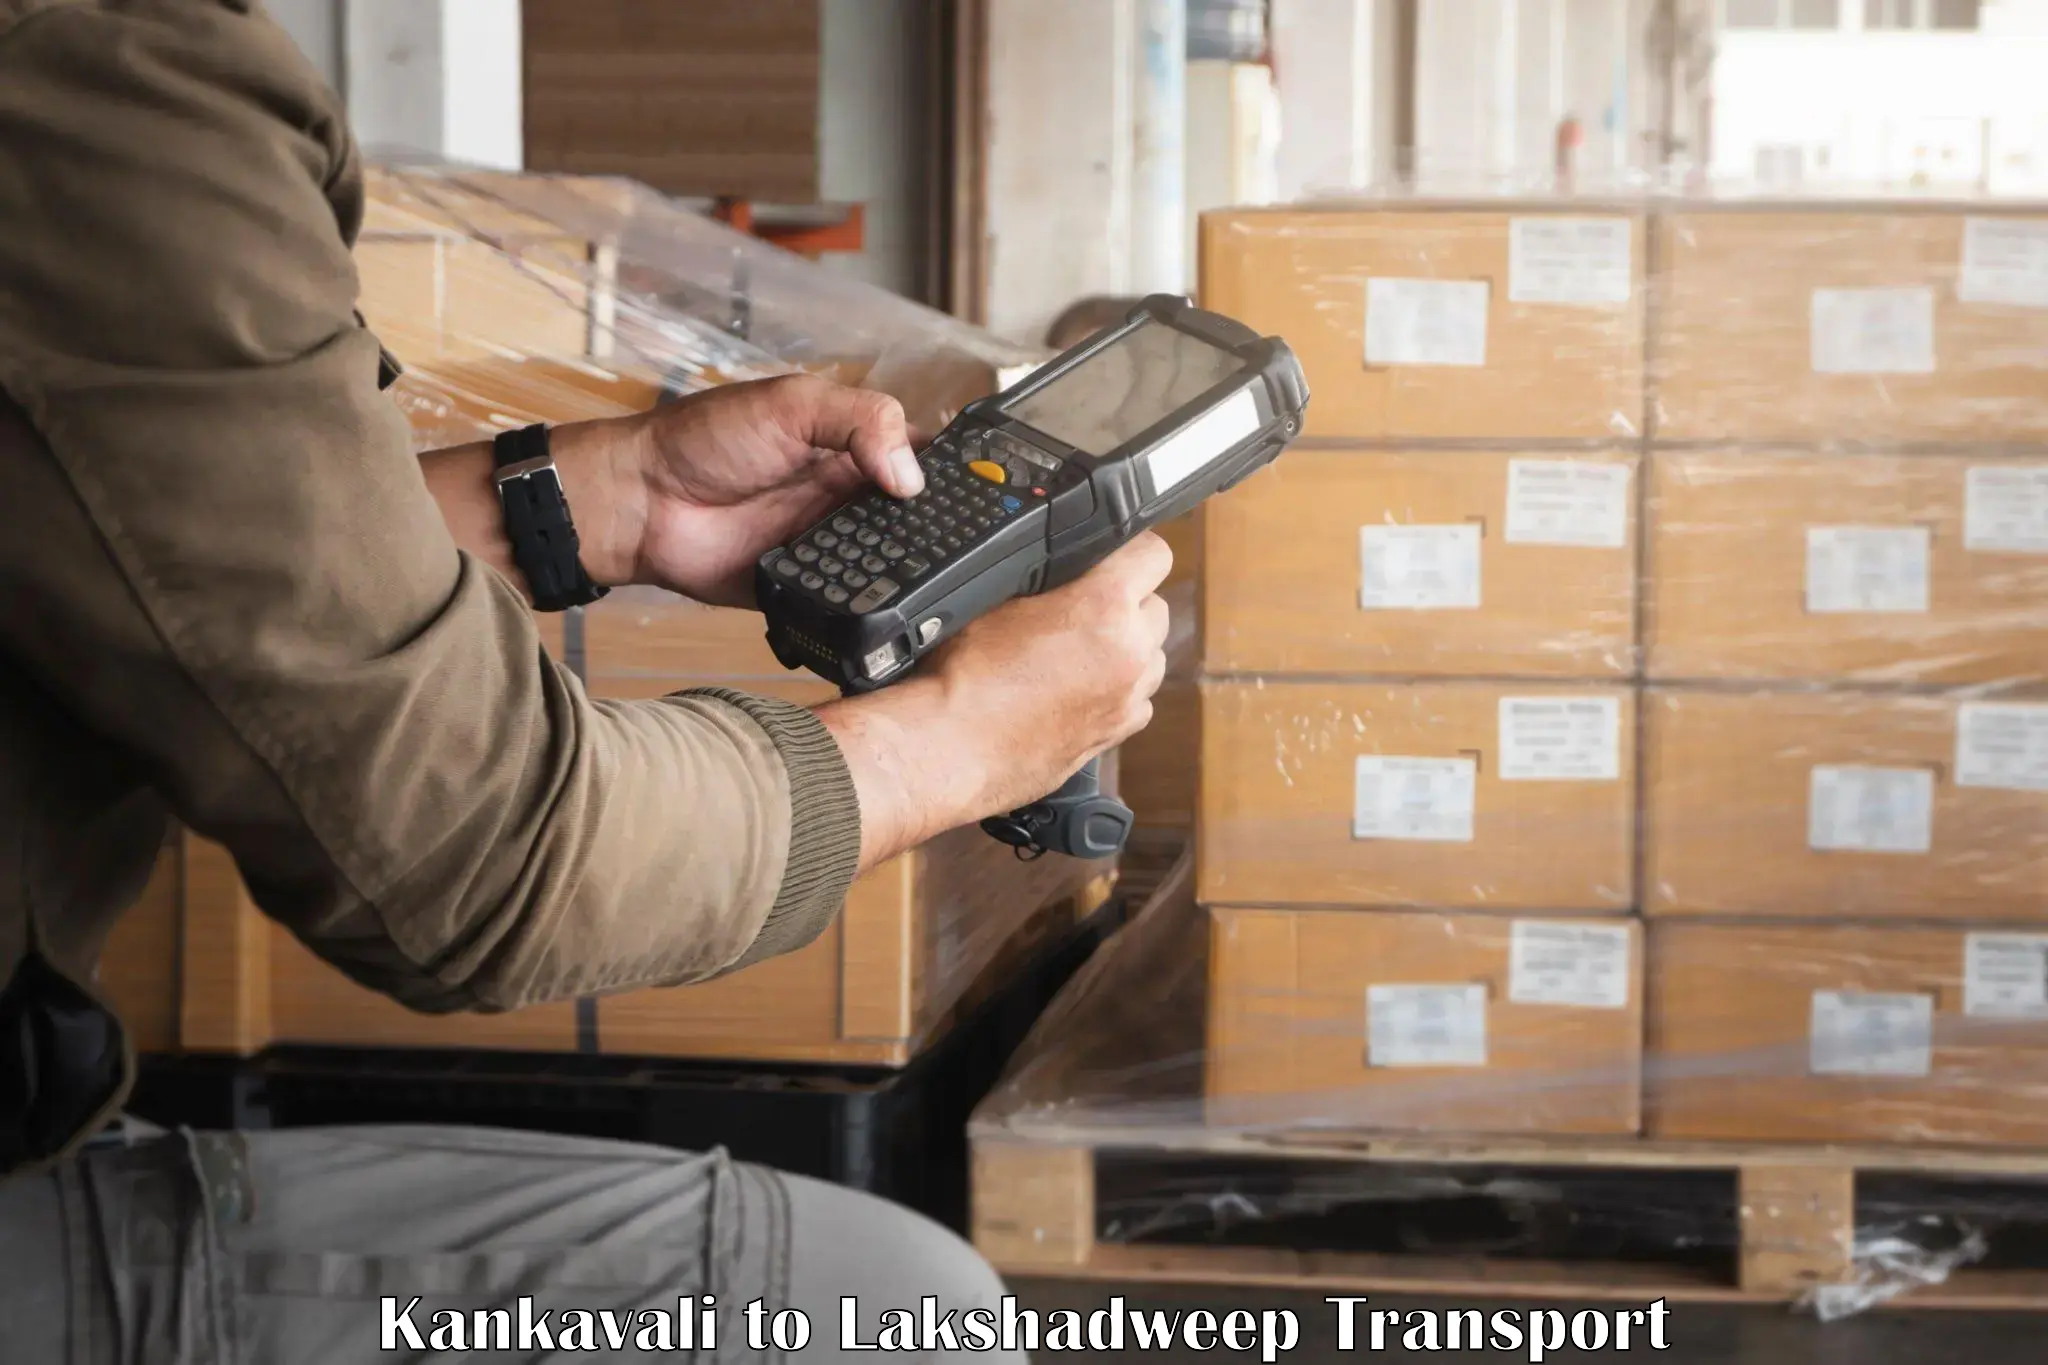 Furniture transport service Kankavali to Lakshadweep